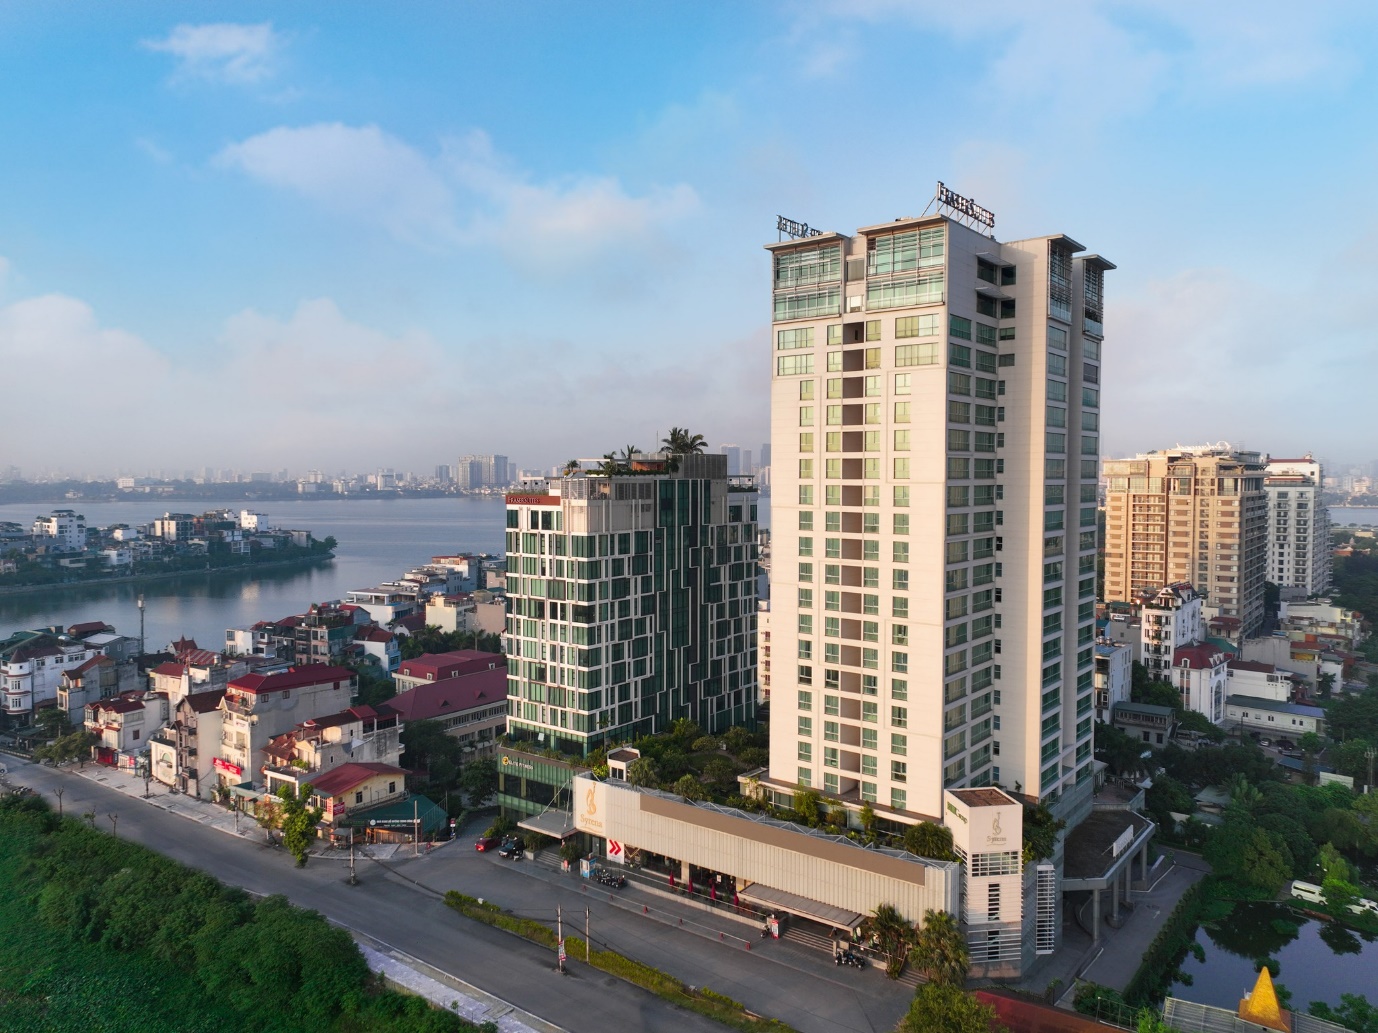 Sau 16 năm hoạt động, Fraser Suites Hanoi vẫn duy trì vị thế một trong những khu căn hộ dịch vụ cao cấp hàng đầu tại thủ đô. Cả năm 2023, Fraser Suites Hanoi đạt tỷ lệ lấp đầy ấn tượng lên tới 84%